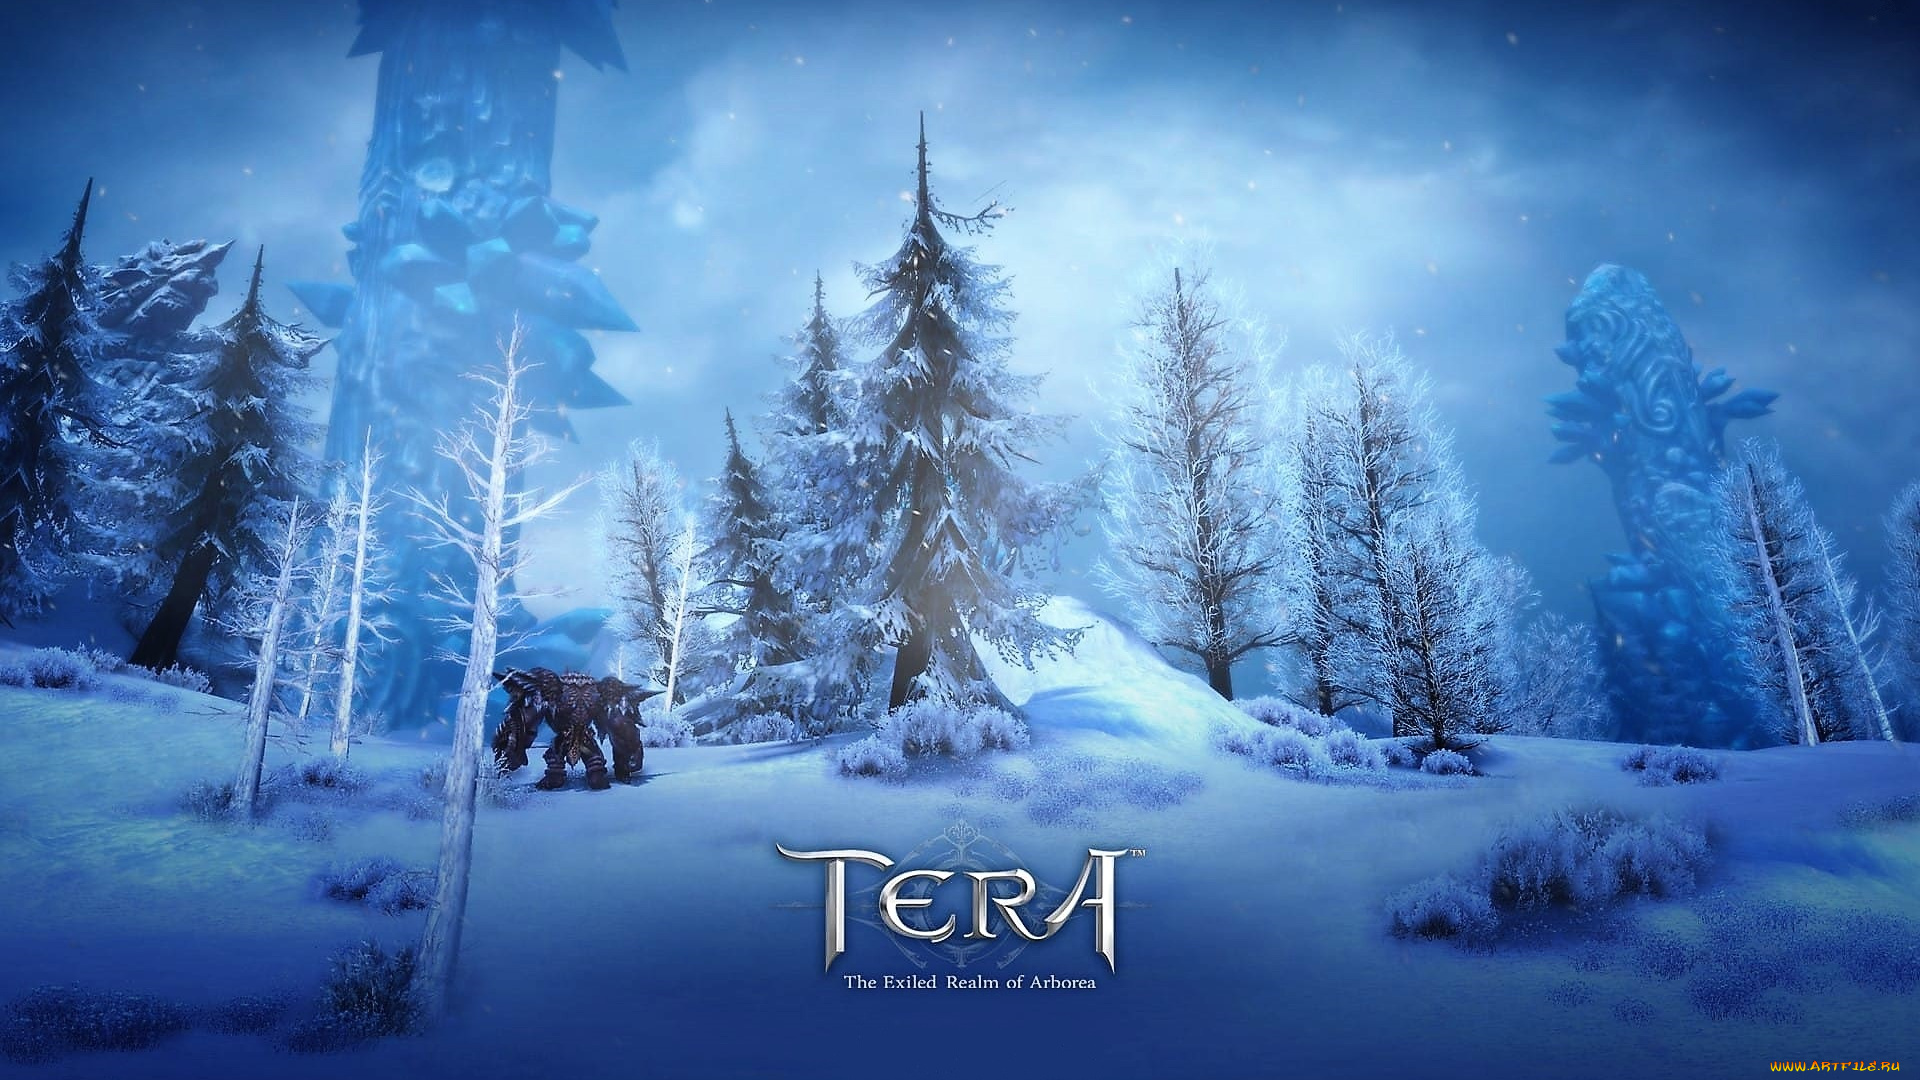 видео, игры, tera, , the, exiled, realm, of, arborea, лес, зима, снег, существо, башня